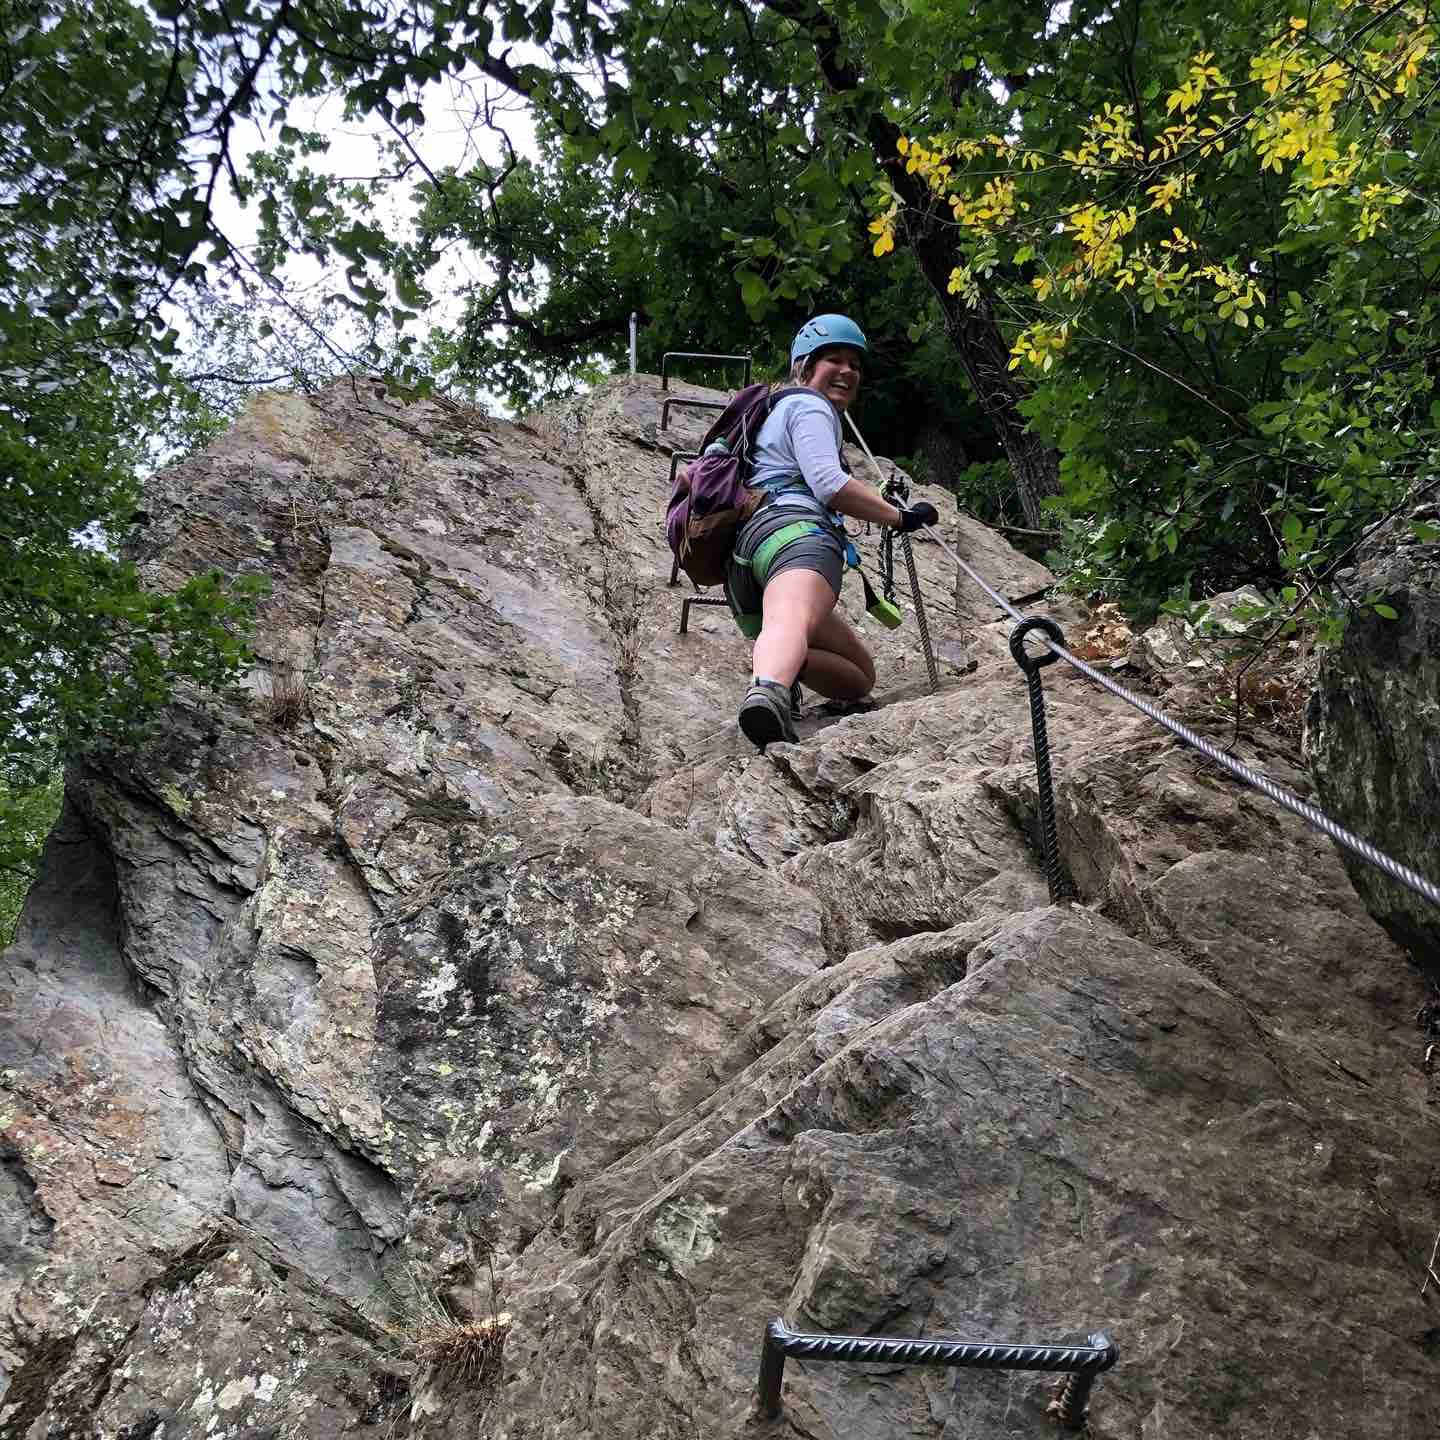 Camping & Klettern: Klettersteige für Anfänger*innen